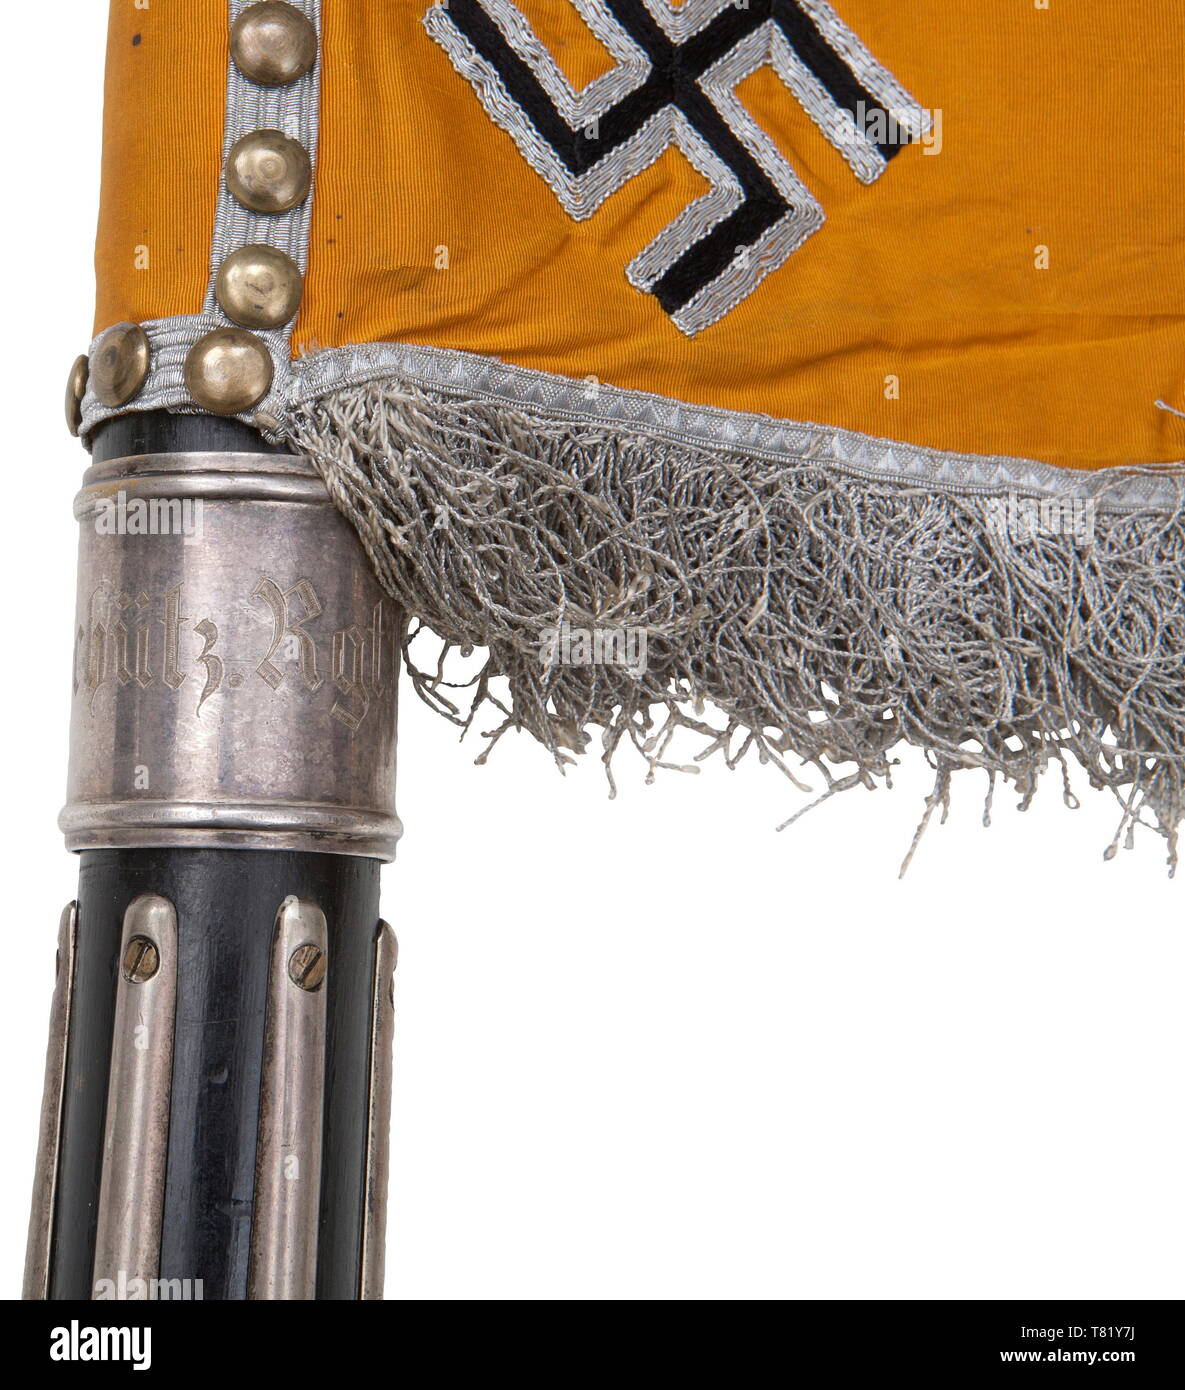 Une norme du 1er bataillon du 6e régiment de cavalerie Schützen. De couleur orange/jaune vif tissu de soie. L'avers et le revers de l'armée noir brodés à la main avec ses plumes d'aigle mis en valeur de Brown. Bec et serres rendues en broderie d'or, posée sur un champ de soie de couleur crème, entouré par une couronne de feuilles de chêne d'argent brodé sur une croix de fer. Quatre croix gammées appliquée dans les coins. Frange d'argent sur trois côtés. Dimensions ca. 51 x 69 cm (sans fourreau). Pièce jointe 46 clous (portés par le polissage), soutenue par des arbres d'argent. Poli noir, Additional-Rights Clearance-Info-Not-Available- Banque D'Images